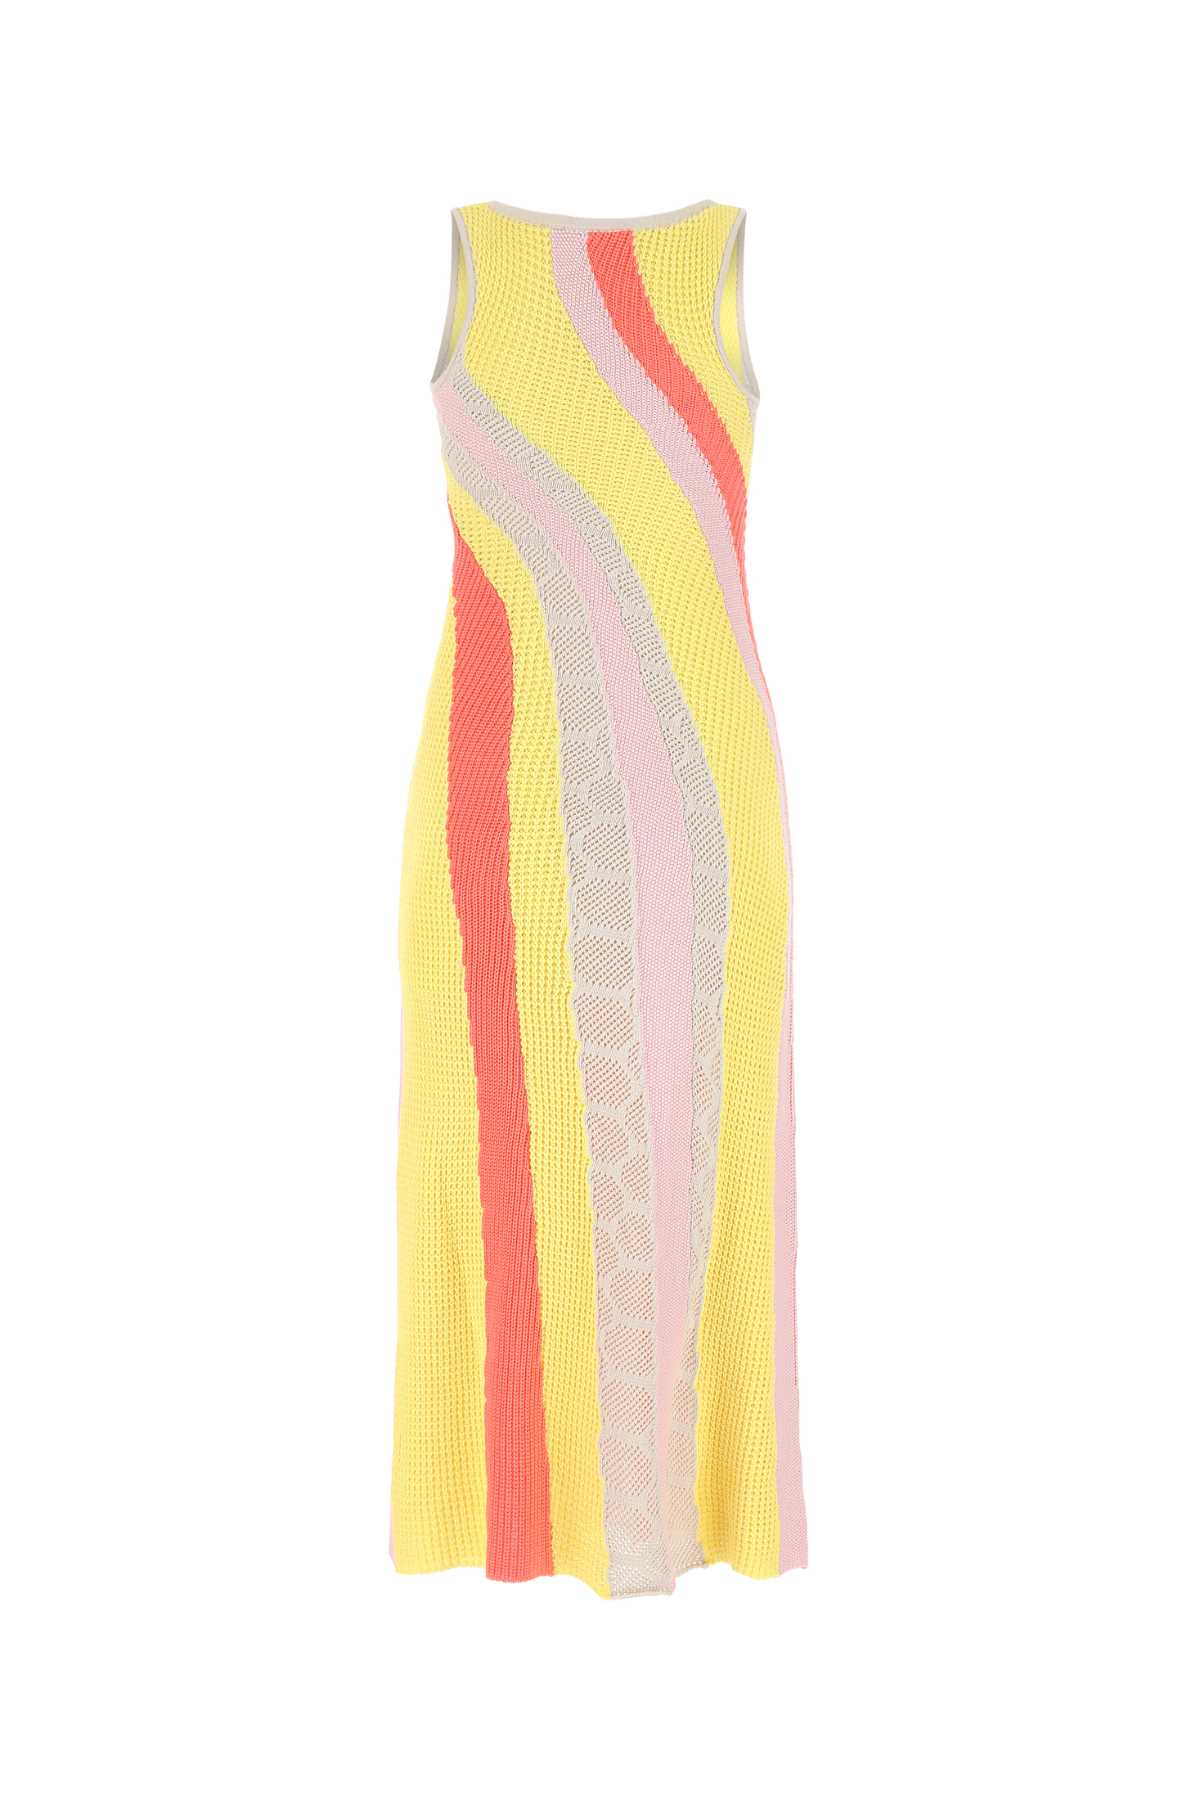 Koché Multicolor Cotton Long-cut Dress In 001f